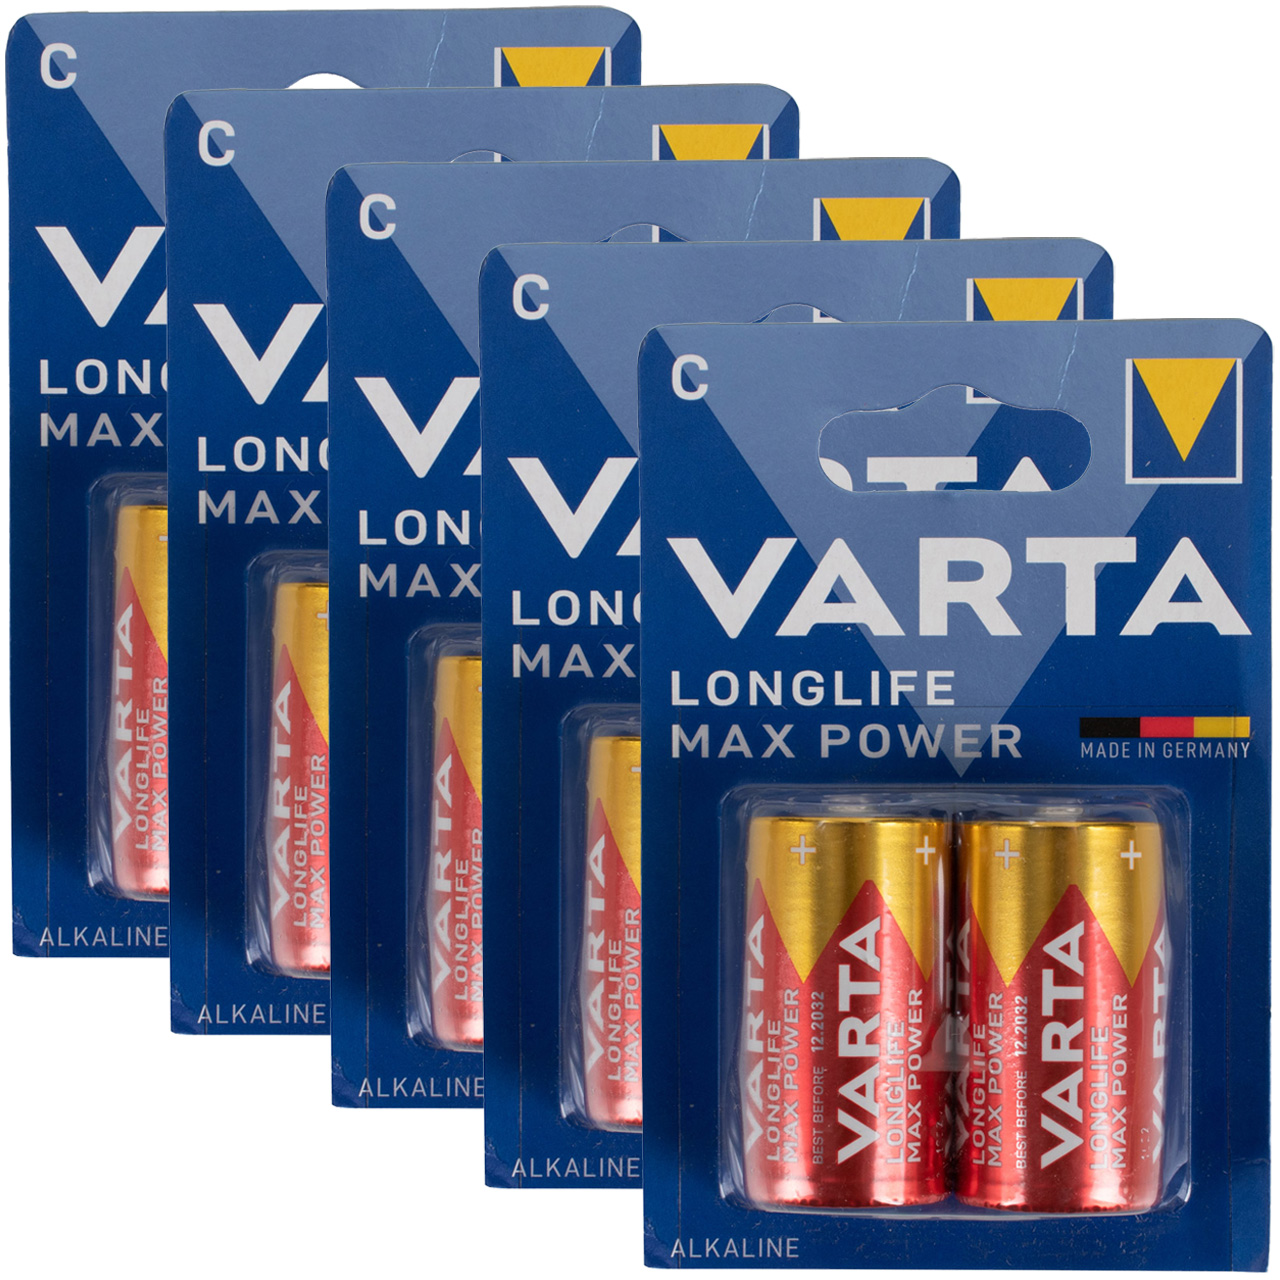 10x VARTA LONGLIFE MAX POWER ALKALINE Batterie C BABY 4714 LR14 MN1400 1,5V